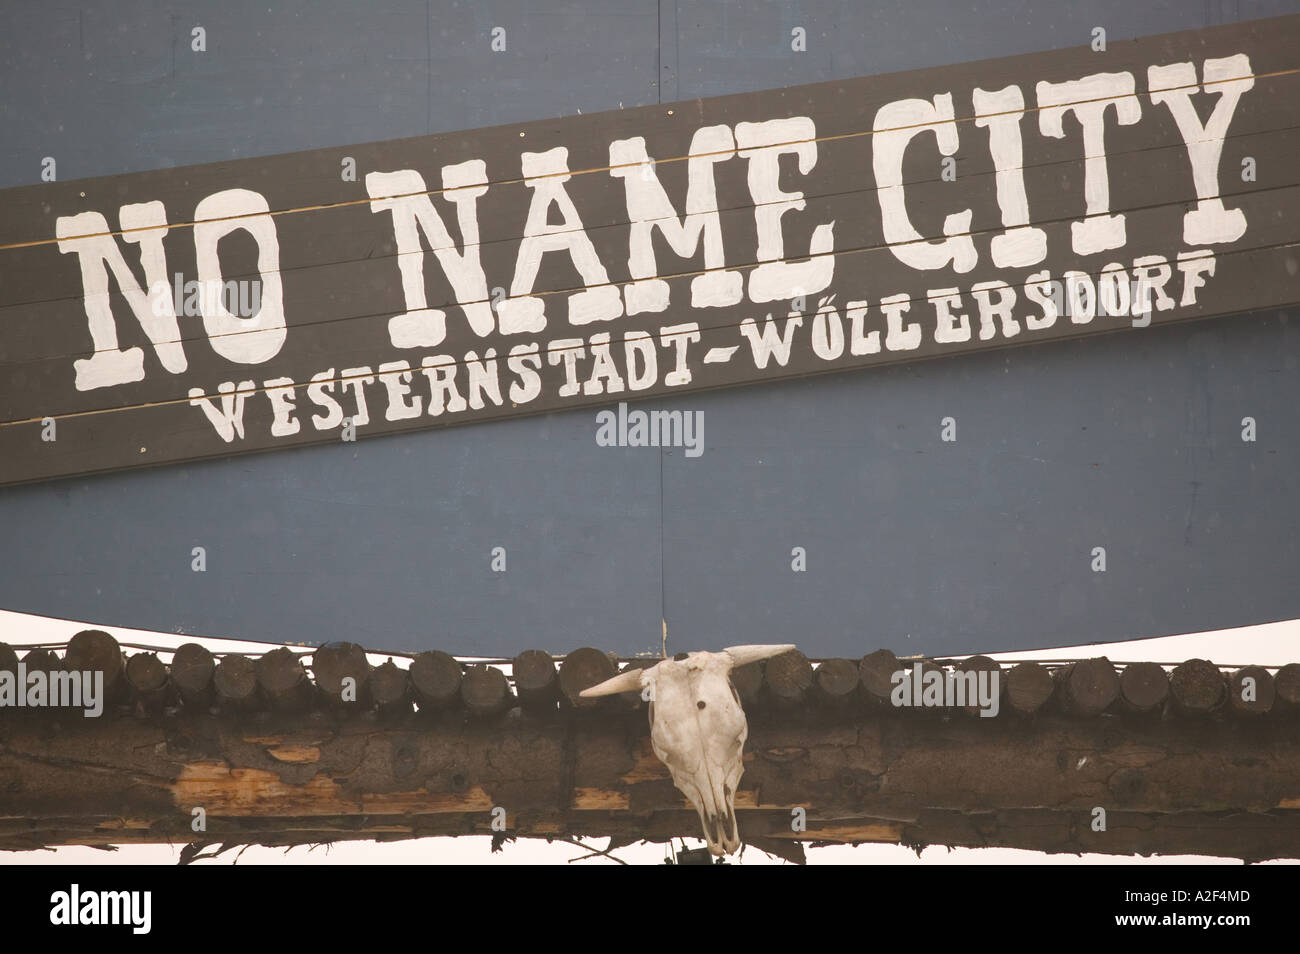 AUSTRIA, Niederosterreich, Wiener Neustadt: No Name City, US Western Theme Cowboy Park (Wollersdorf) Stock Photo